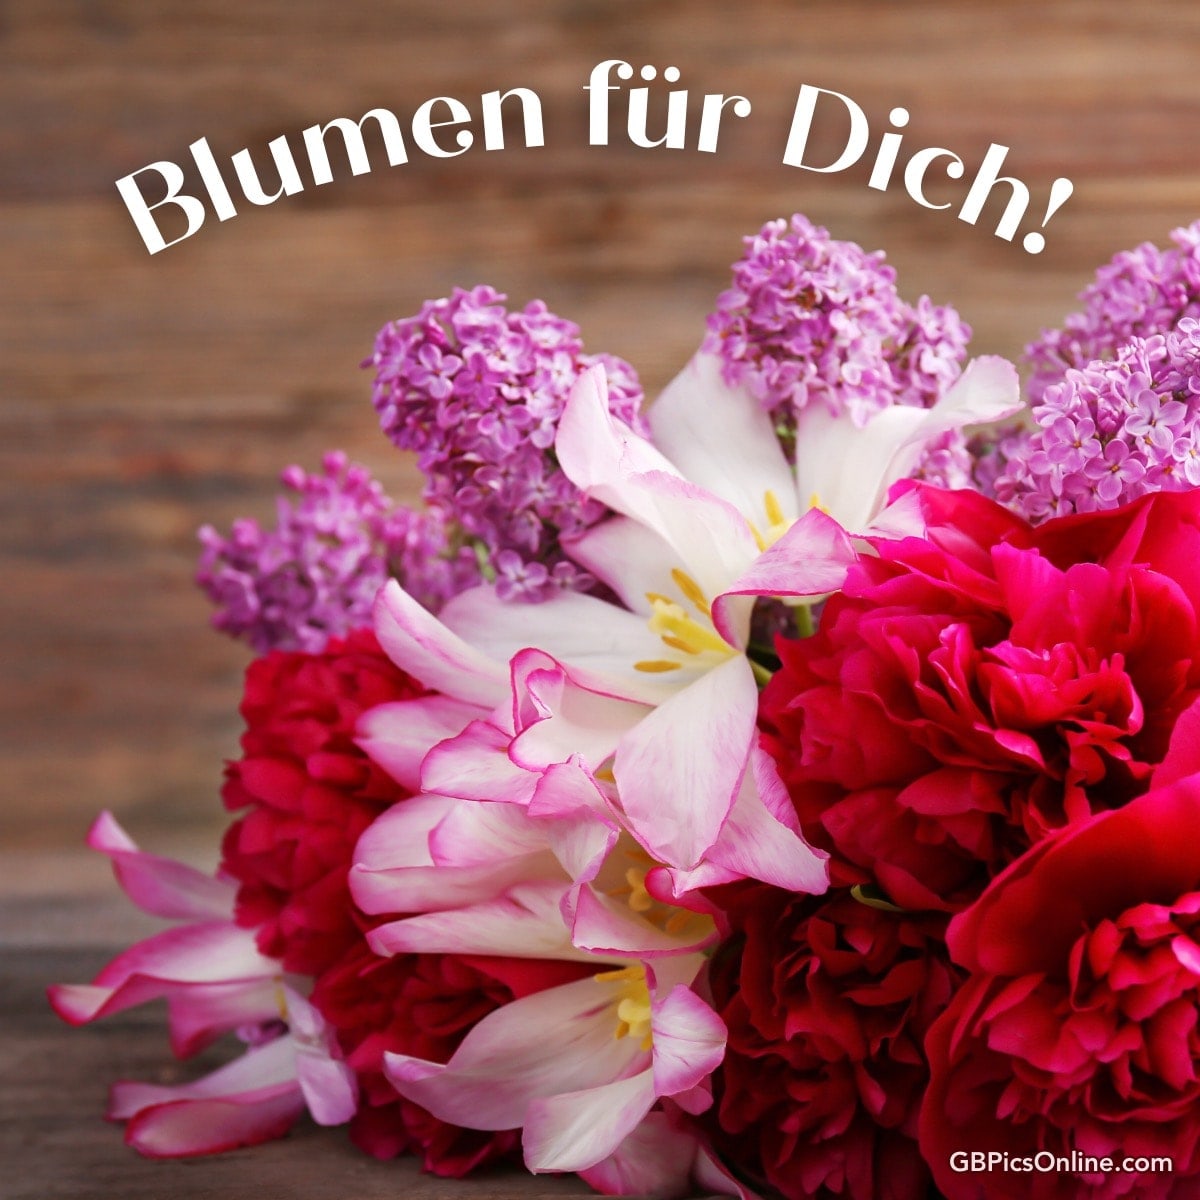 Buntes Blumenbouquet mit „Blumen für Dich!“ Text auf Holzhintergrund